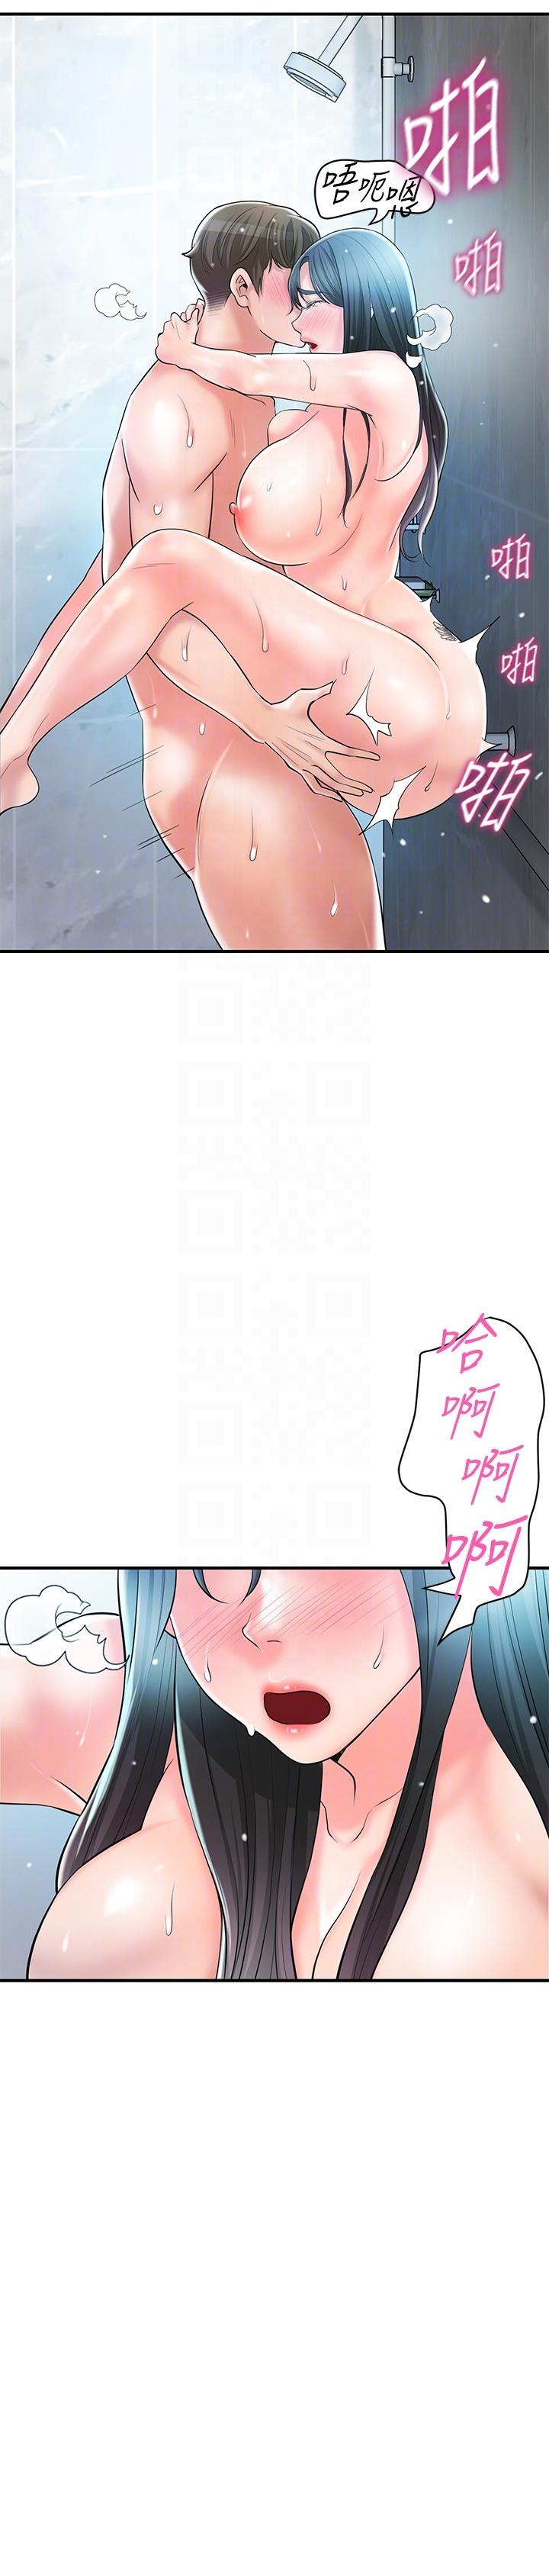 韩国污漫画 幸福督市 第99话-无法停止的活塞运动 6